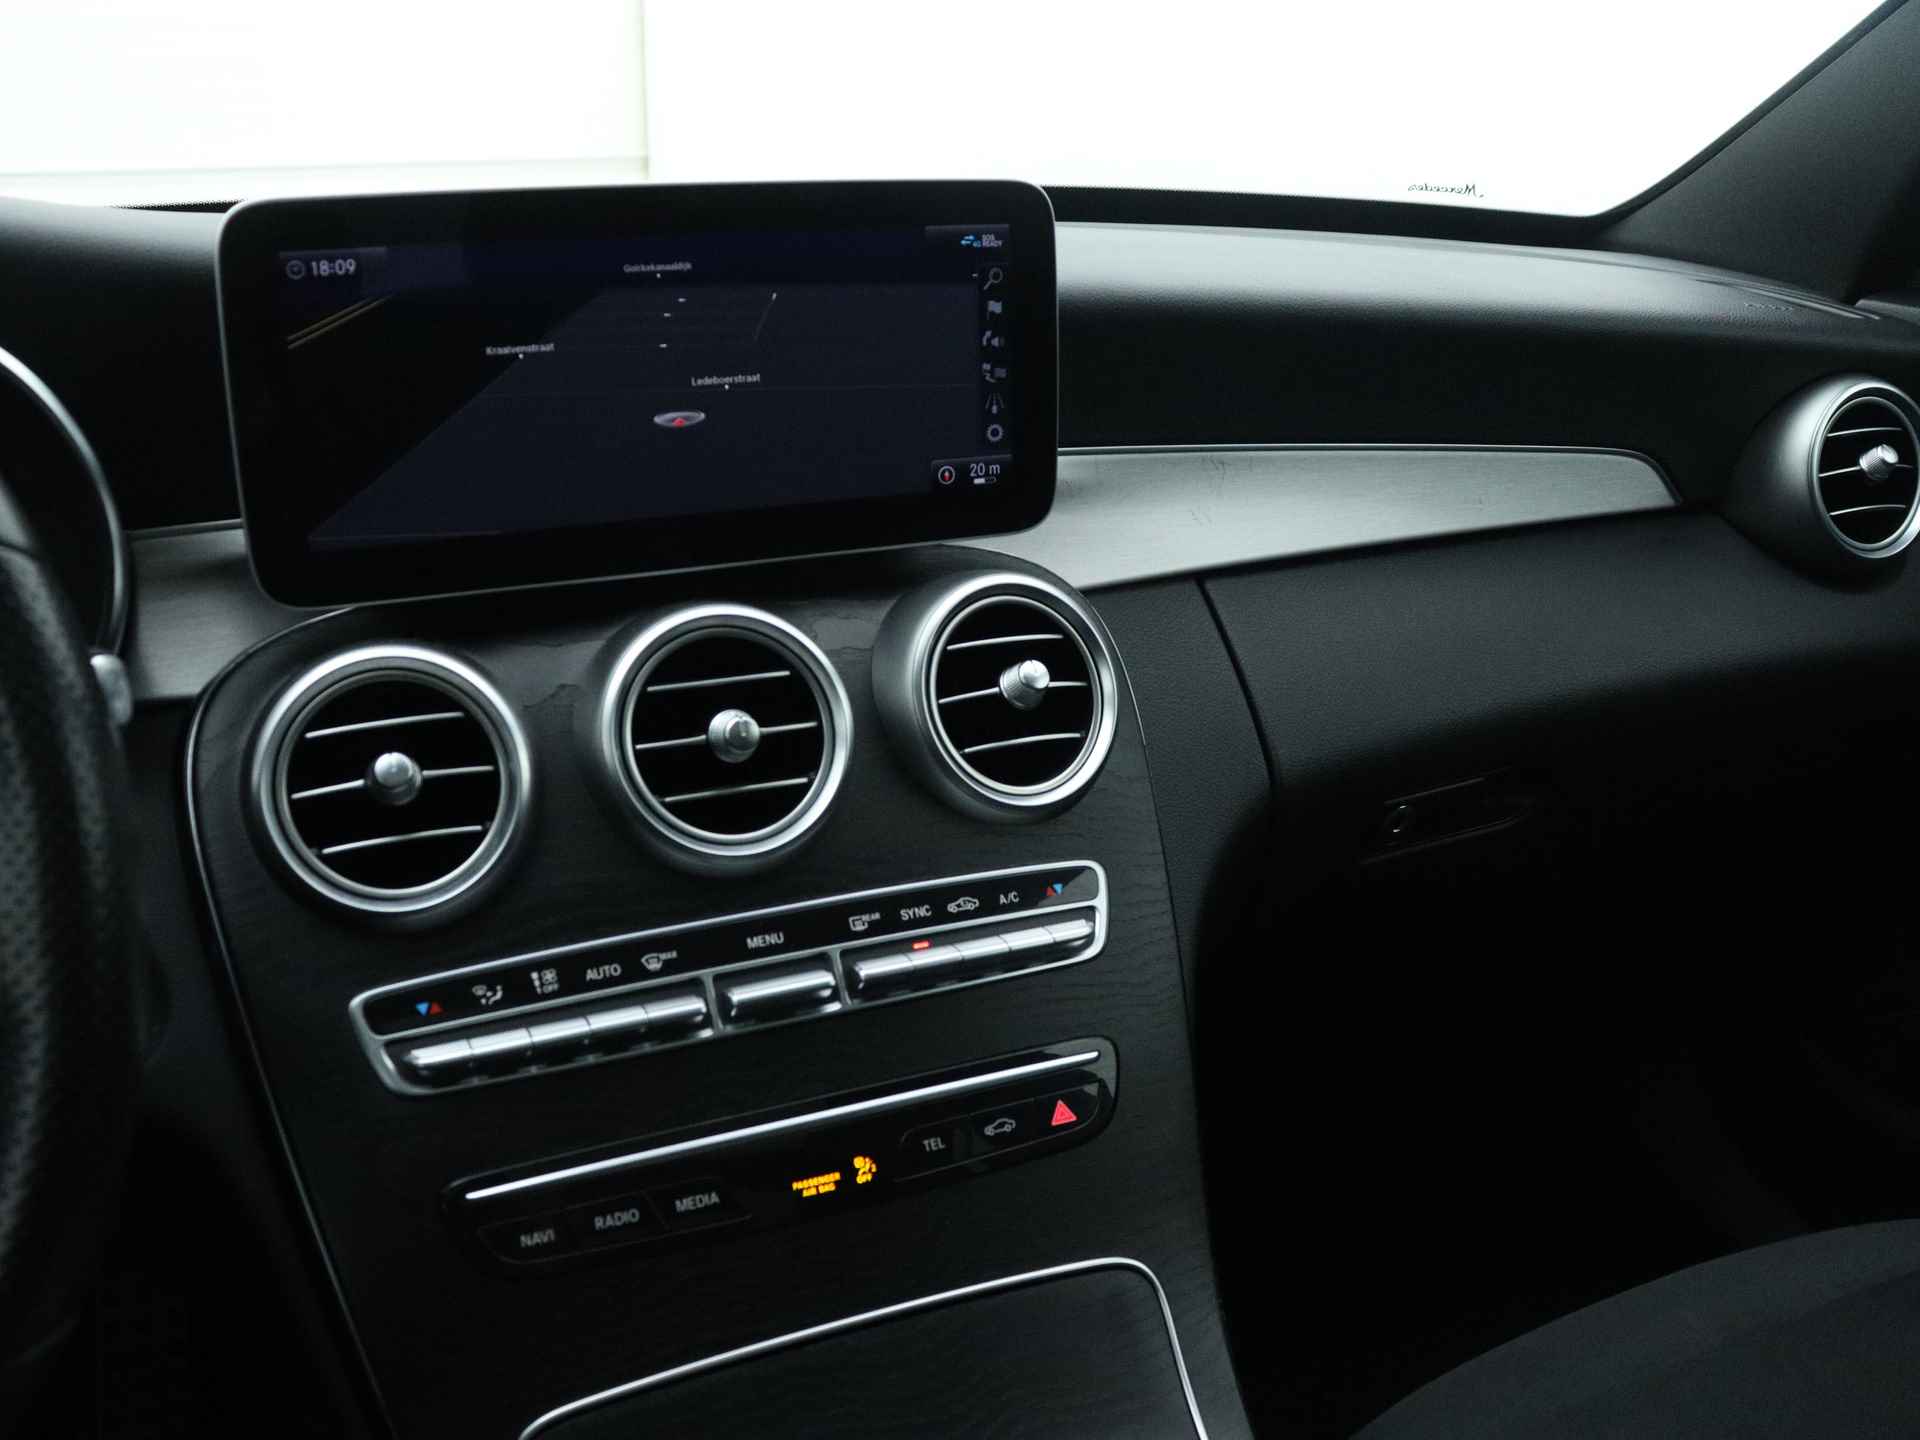 Mercedes-Benz C-Klasse 180 Business Solution AMG | 5 spaaks lichtmetalen velgen | Navigatie | Panoramadak | AMG Styling | Achteruitrijcamera | LED Koplampen | Inclusief 24 maanden MB Certified garantie voor europa. - 8/50